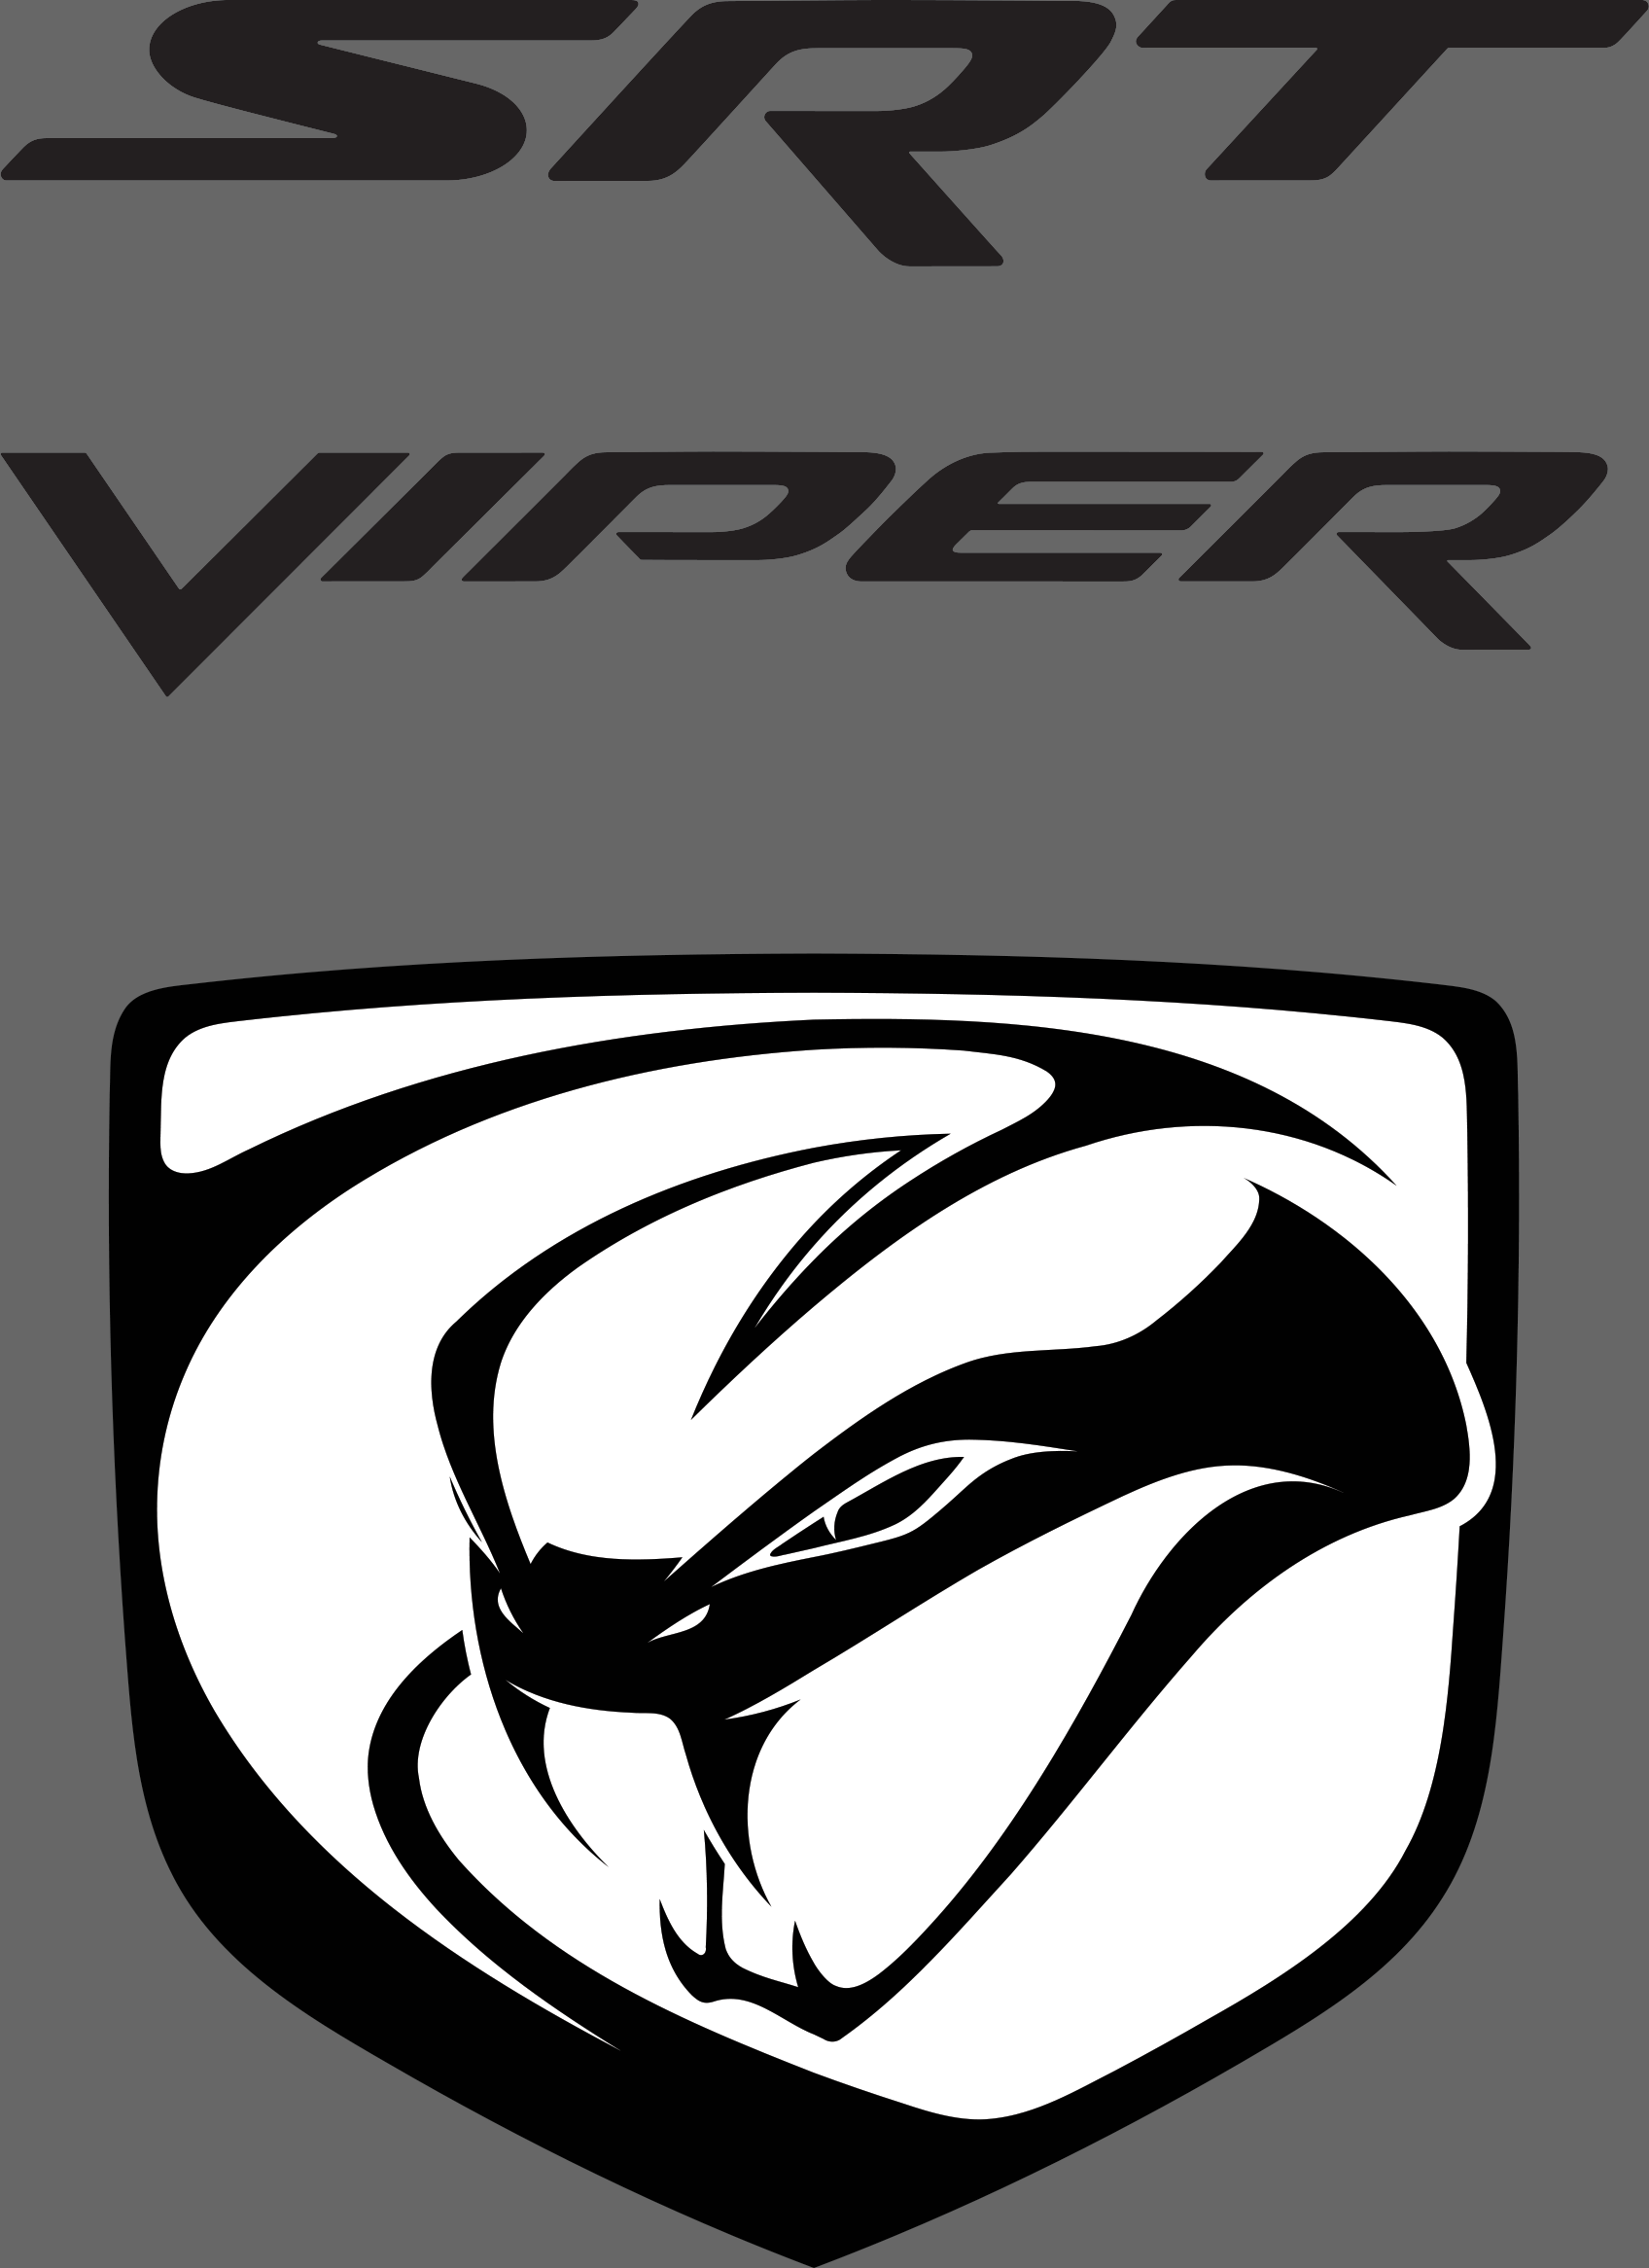 New Viper Logo - Dodge viper Logos